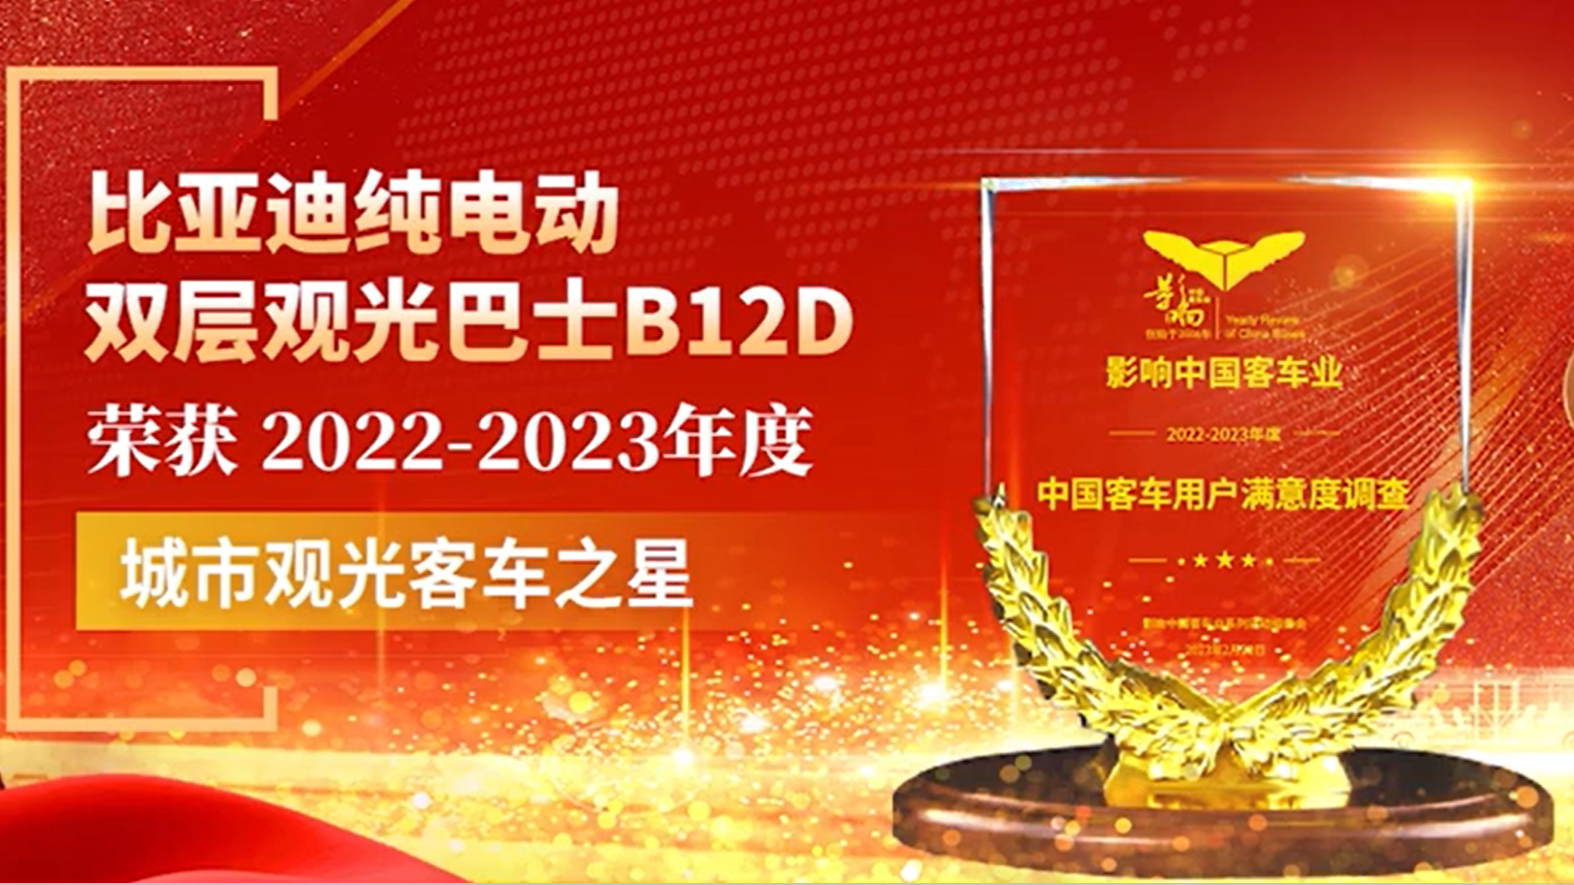 比亚迪B12D荣获“城市观光客车之星”